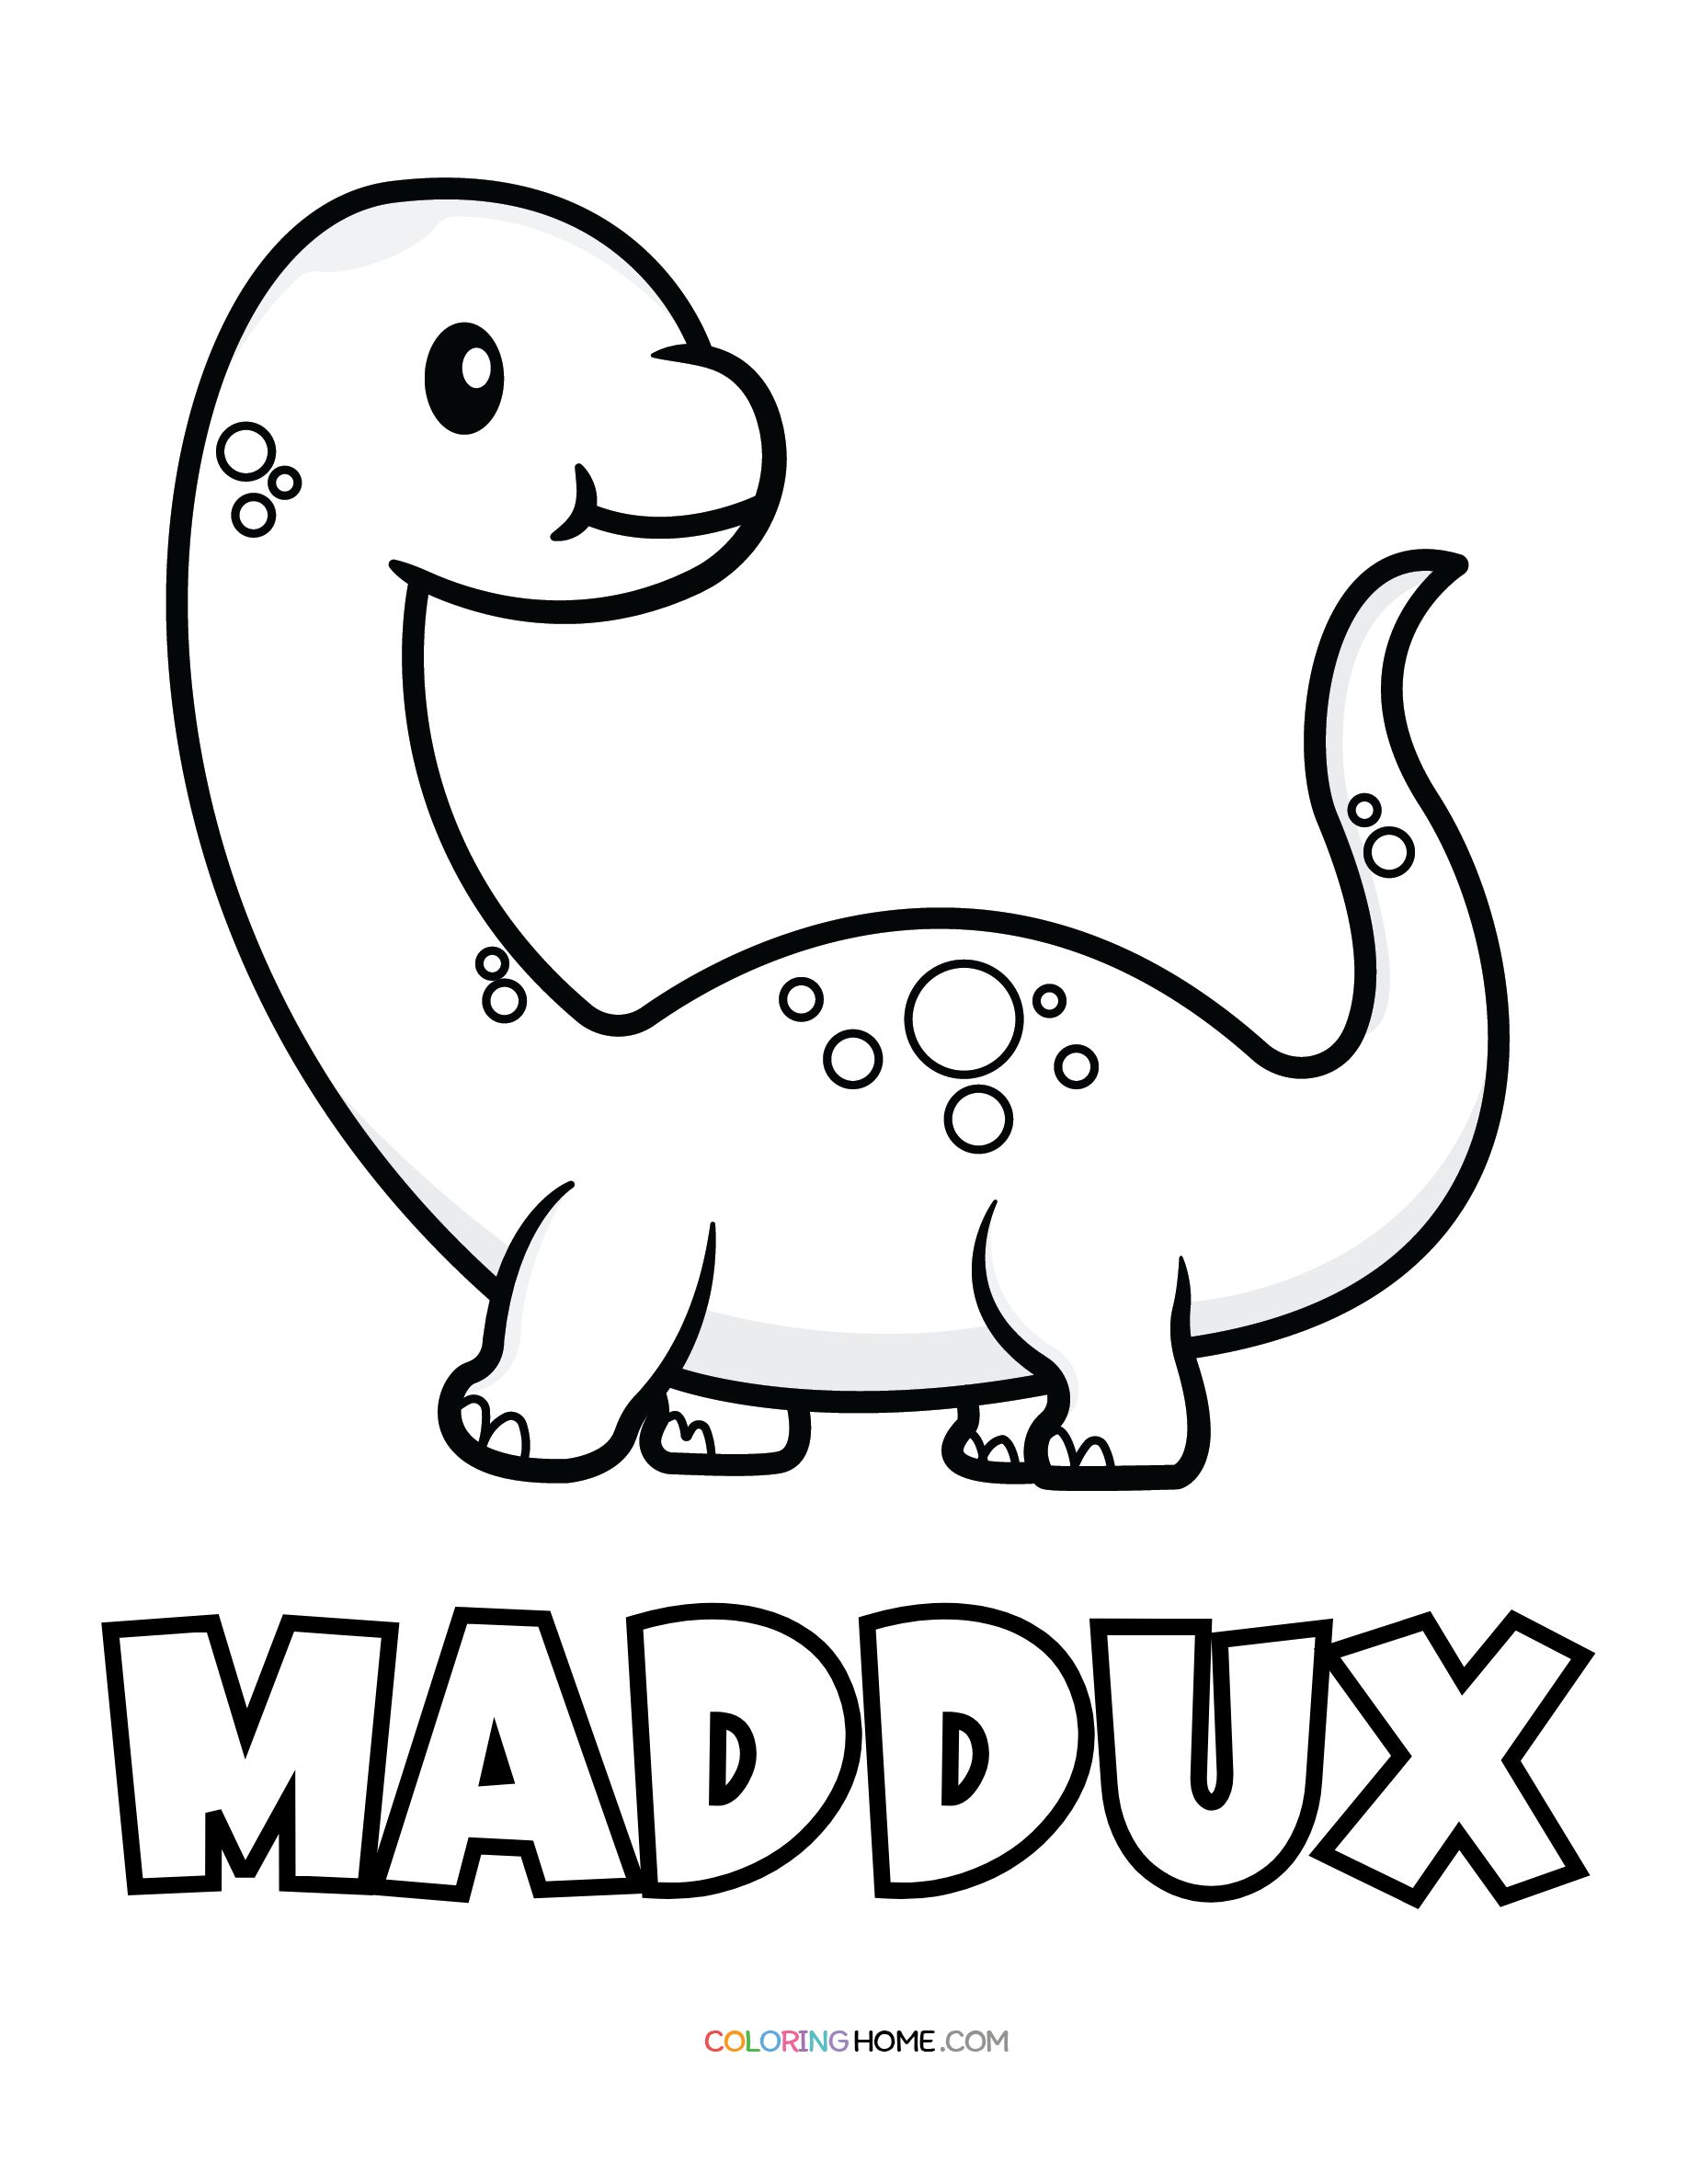 Maddux dinosaur coloring page